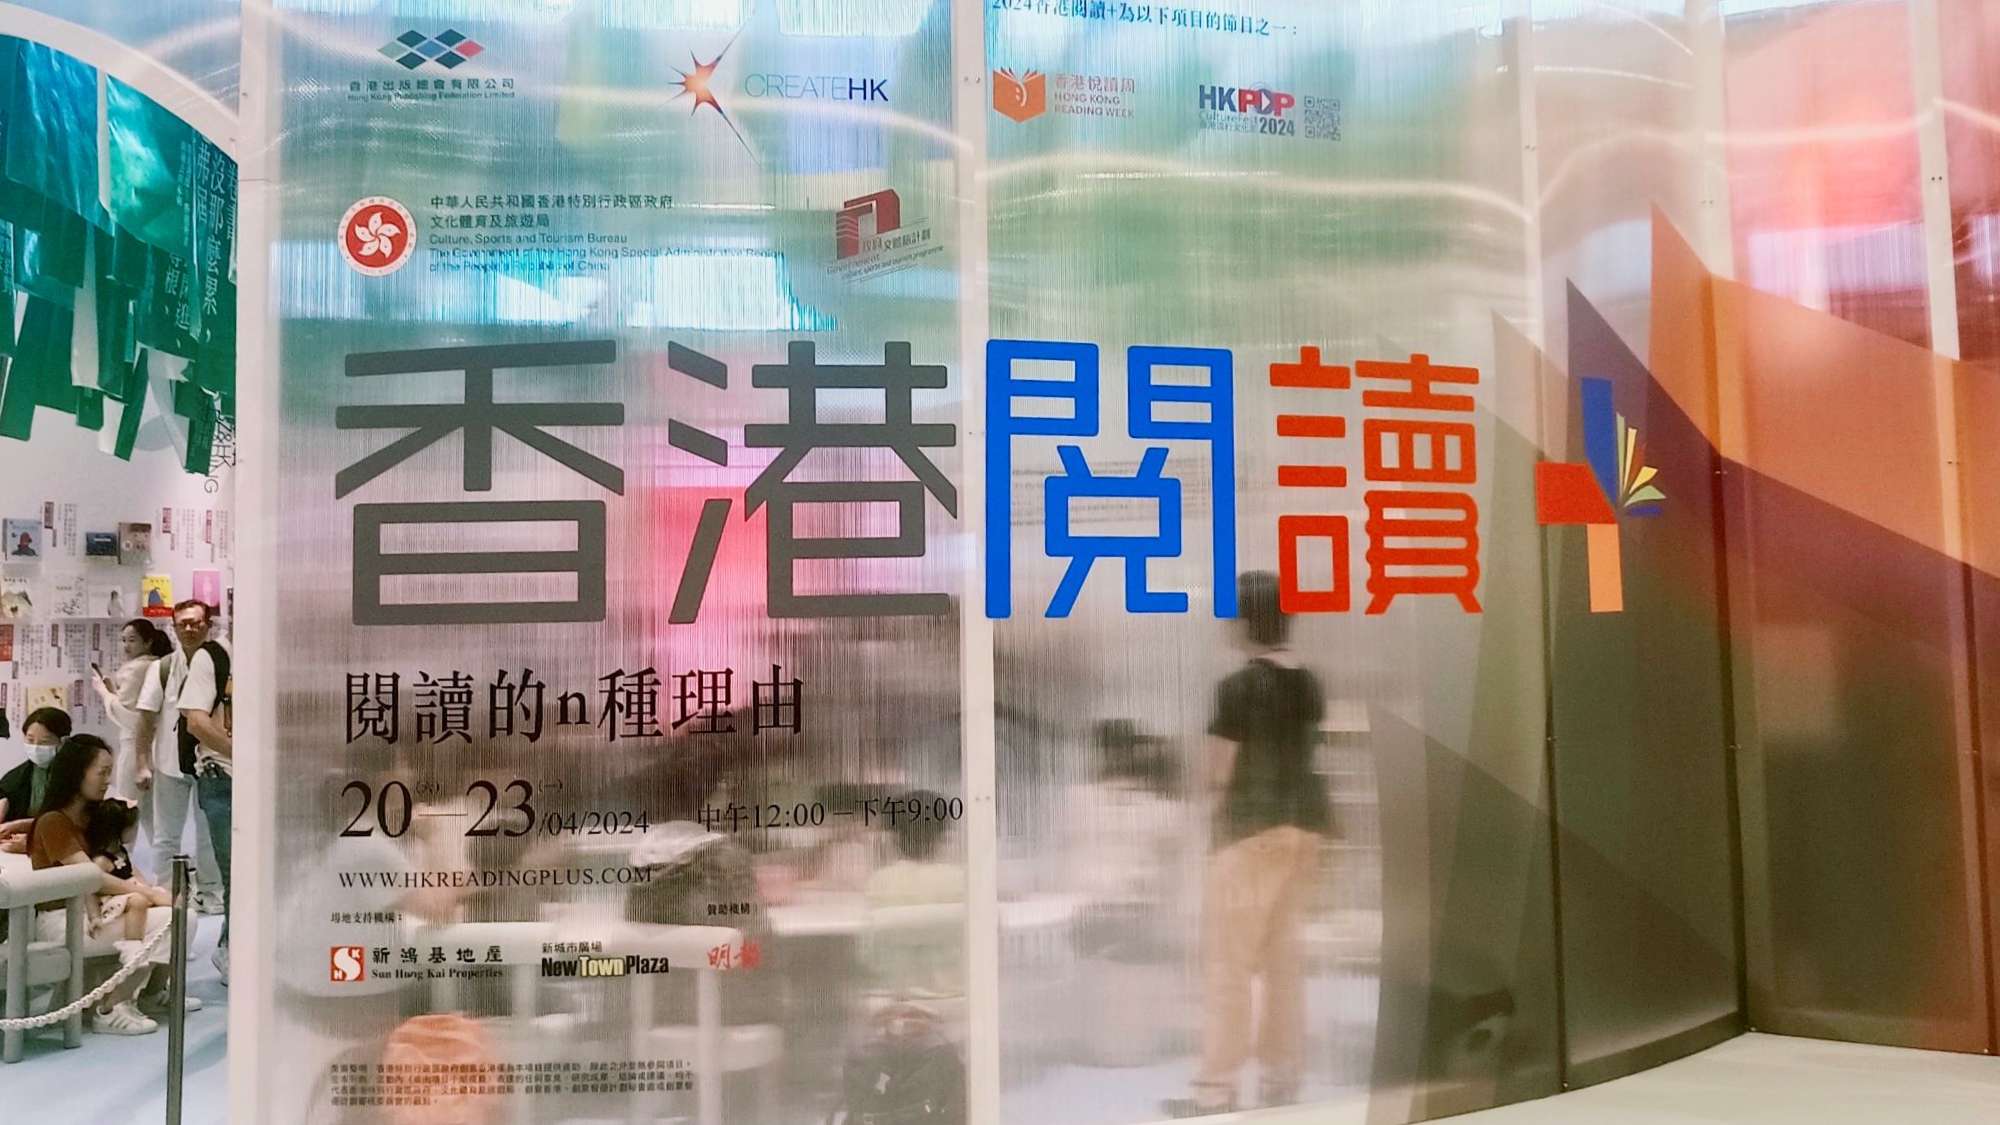 首屆「香港閱讀+」正式啟動 「閱讀的n種理由」焦點展覽精彩多多